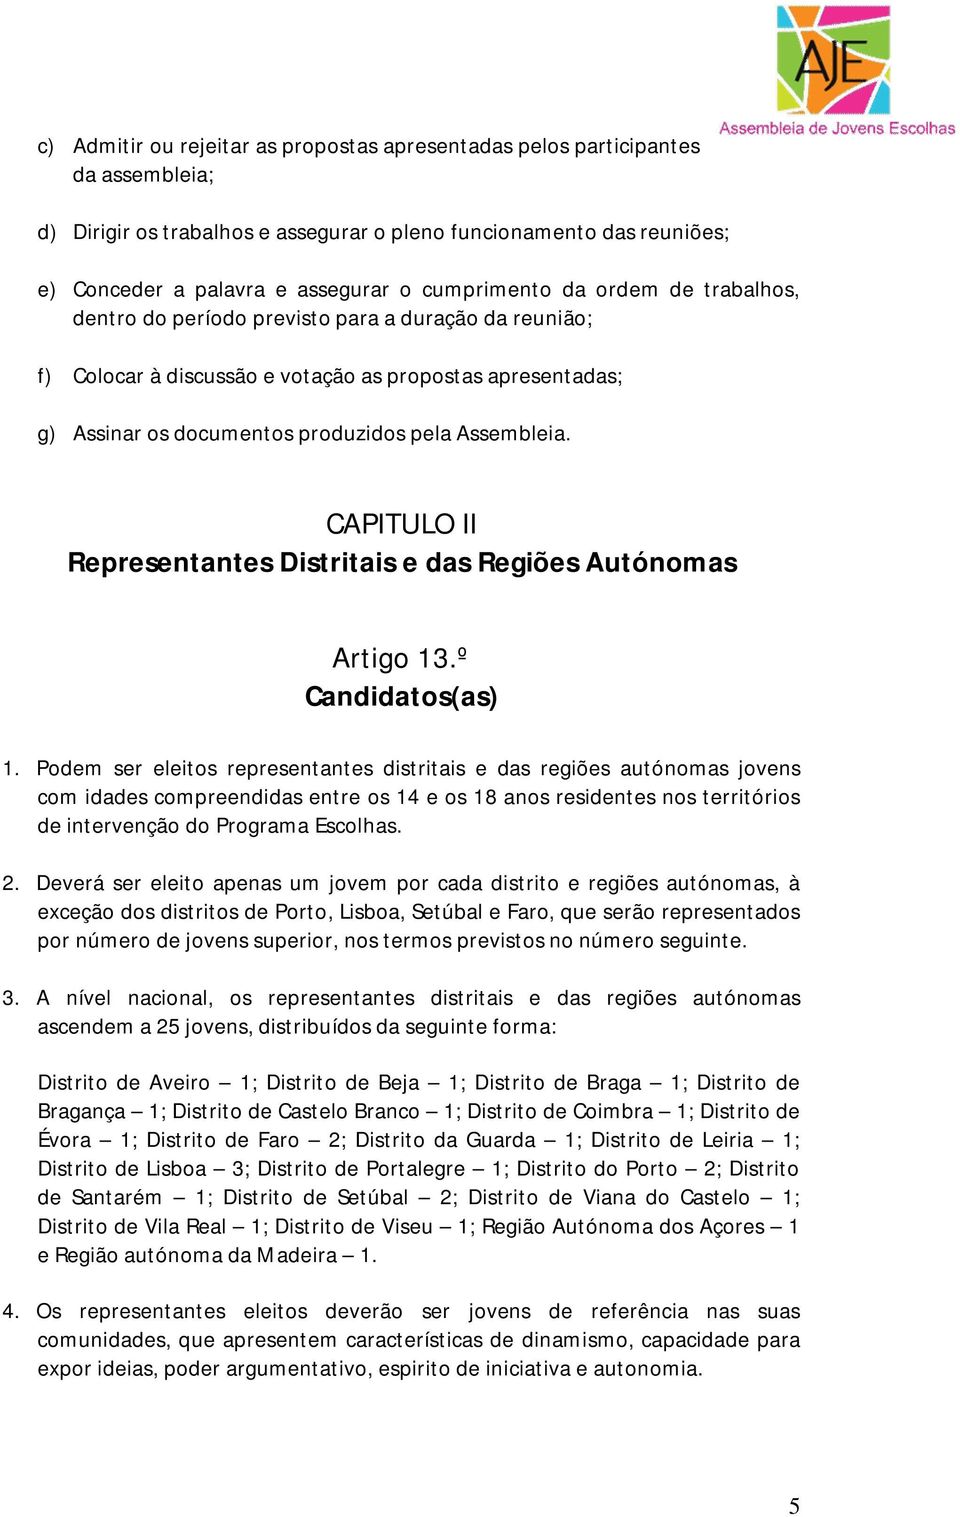 Assembleia. CAPITULO II Representantes Distritais e das Regiões Autónomas Artigo 13.º Candidatos(as) 1.